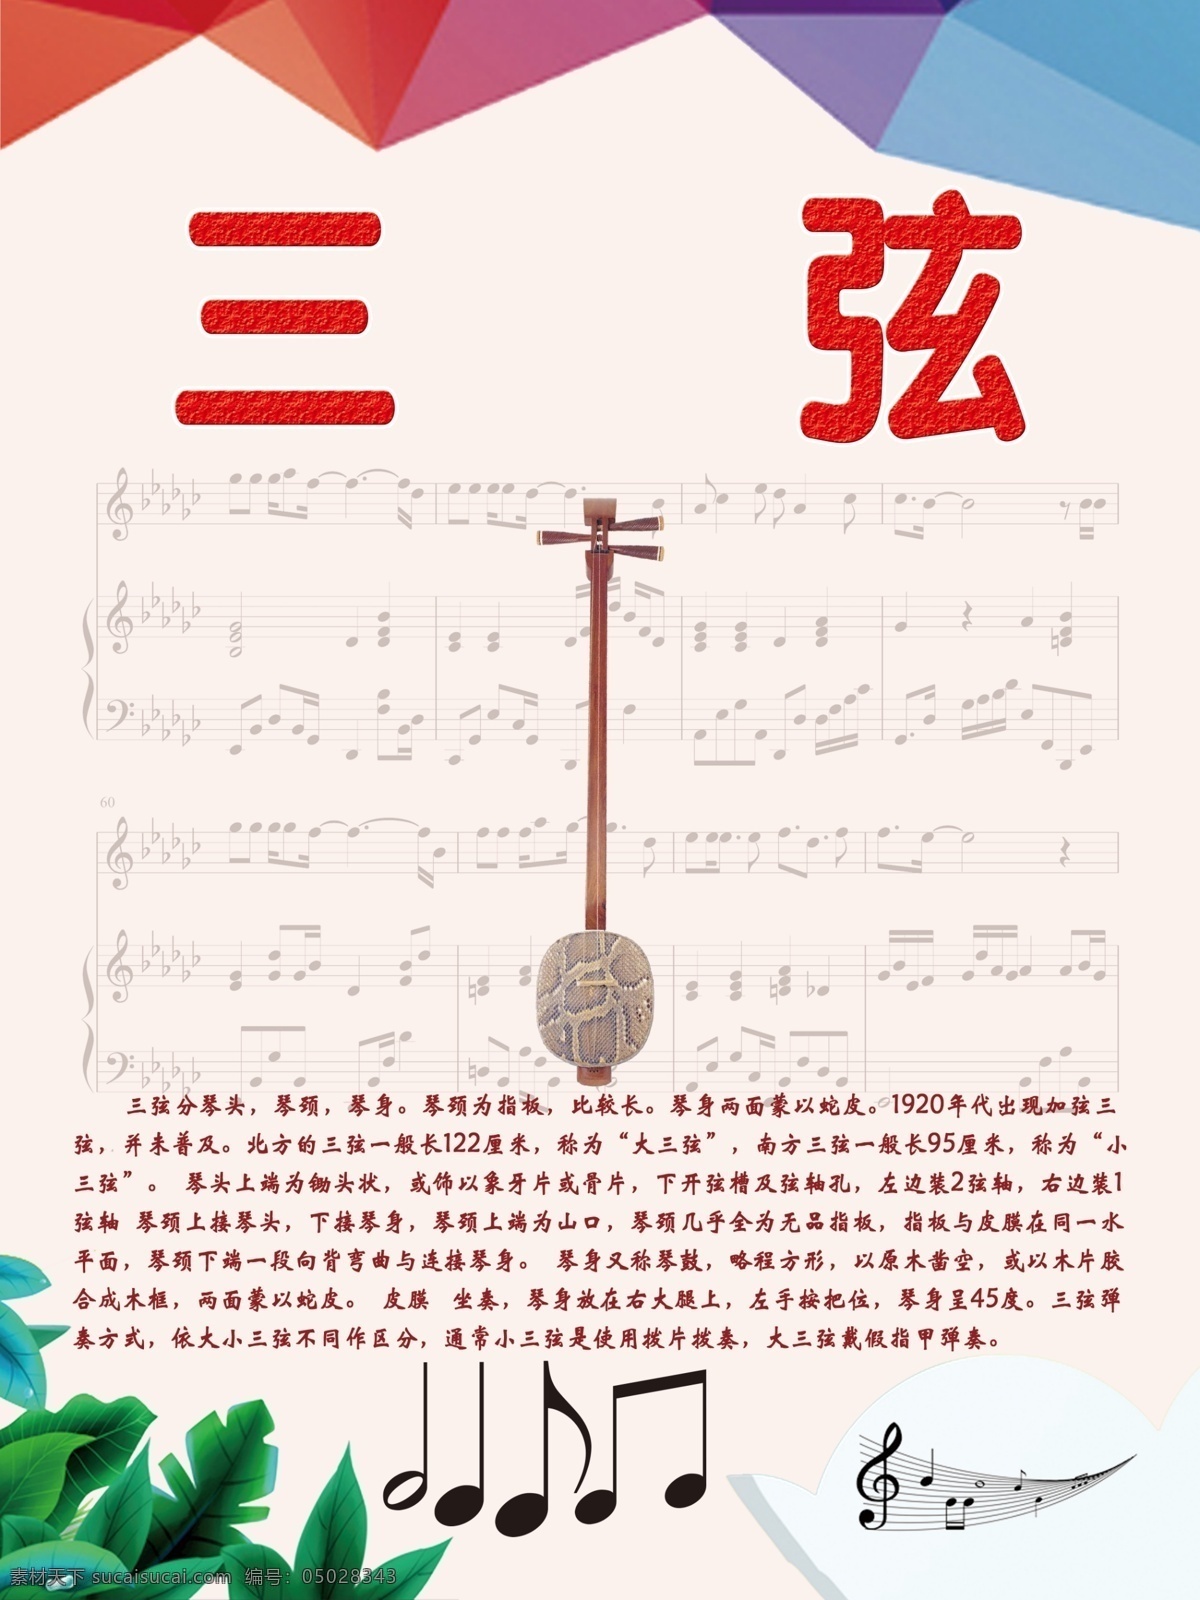 乐器 展板 系列 三弦 乐器文化